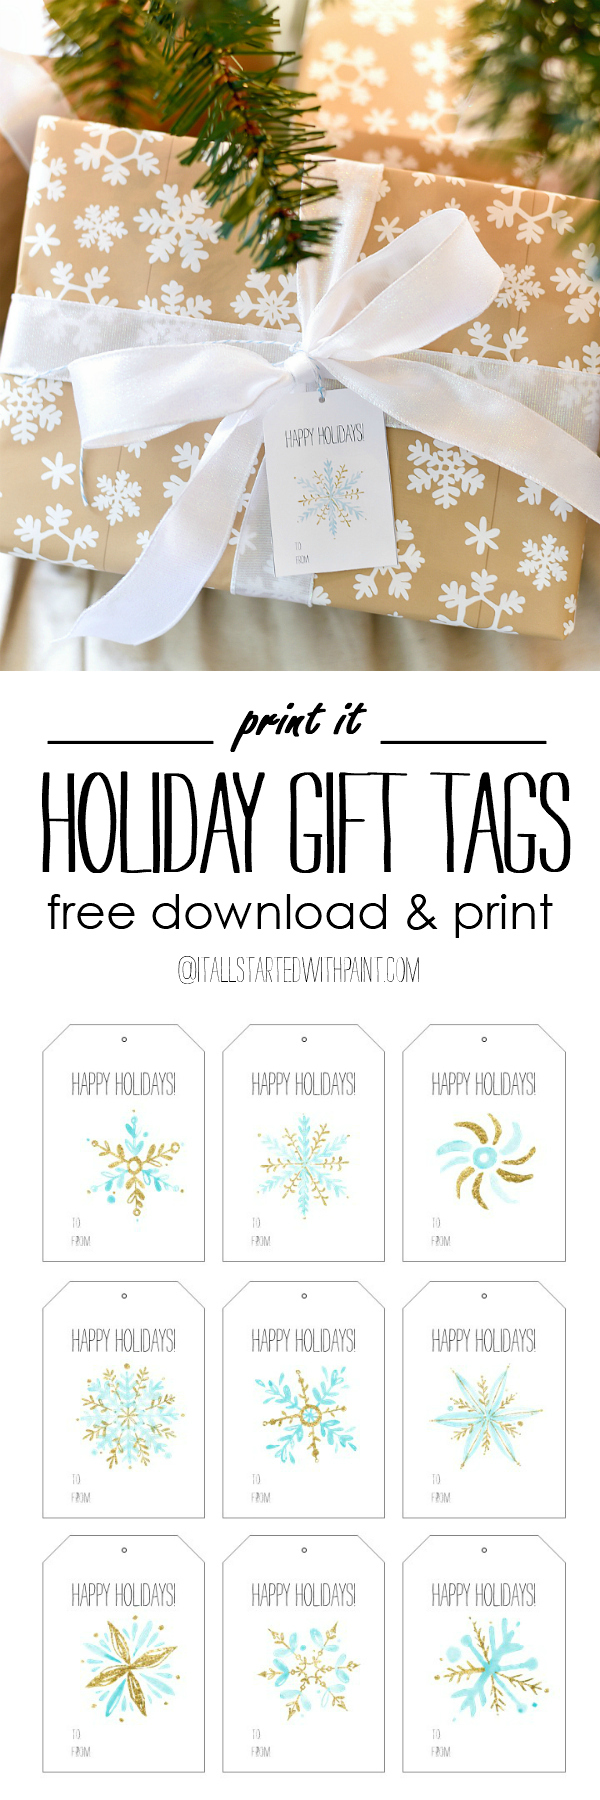 Free Printable Holiday Gift Tags - Snowflake Christmas Gift Tags - Free Download and Print Gift Tags